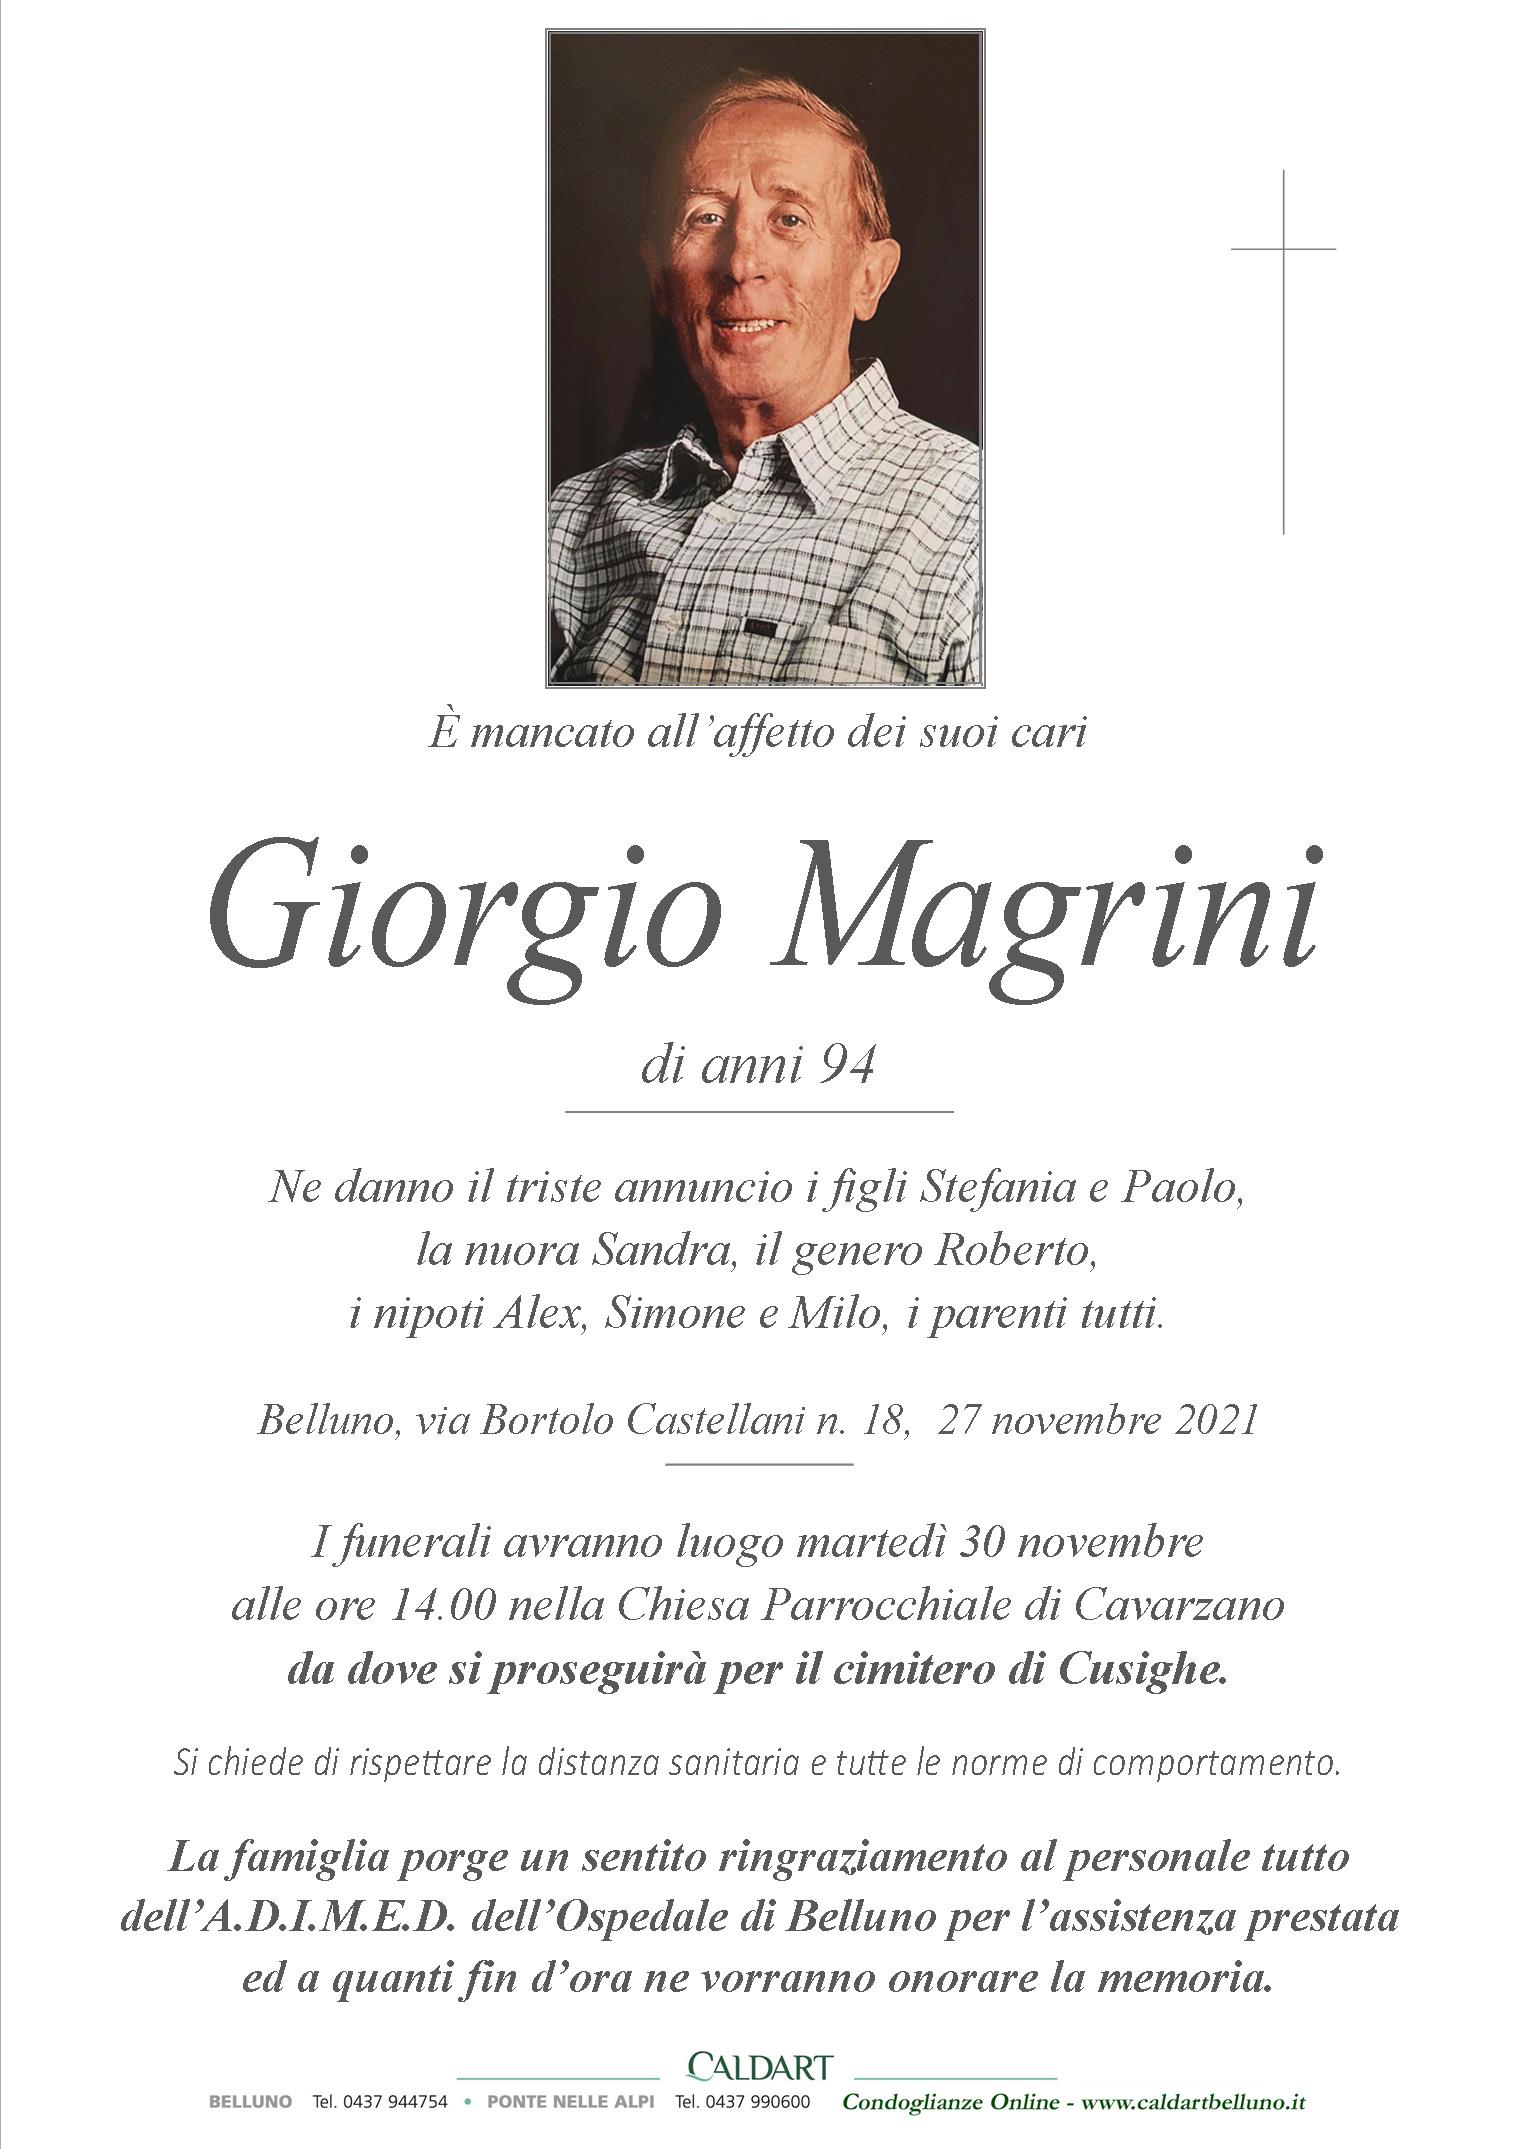 Magrini Giorgio